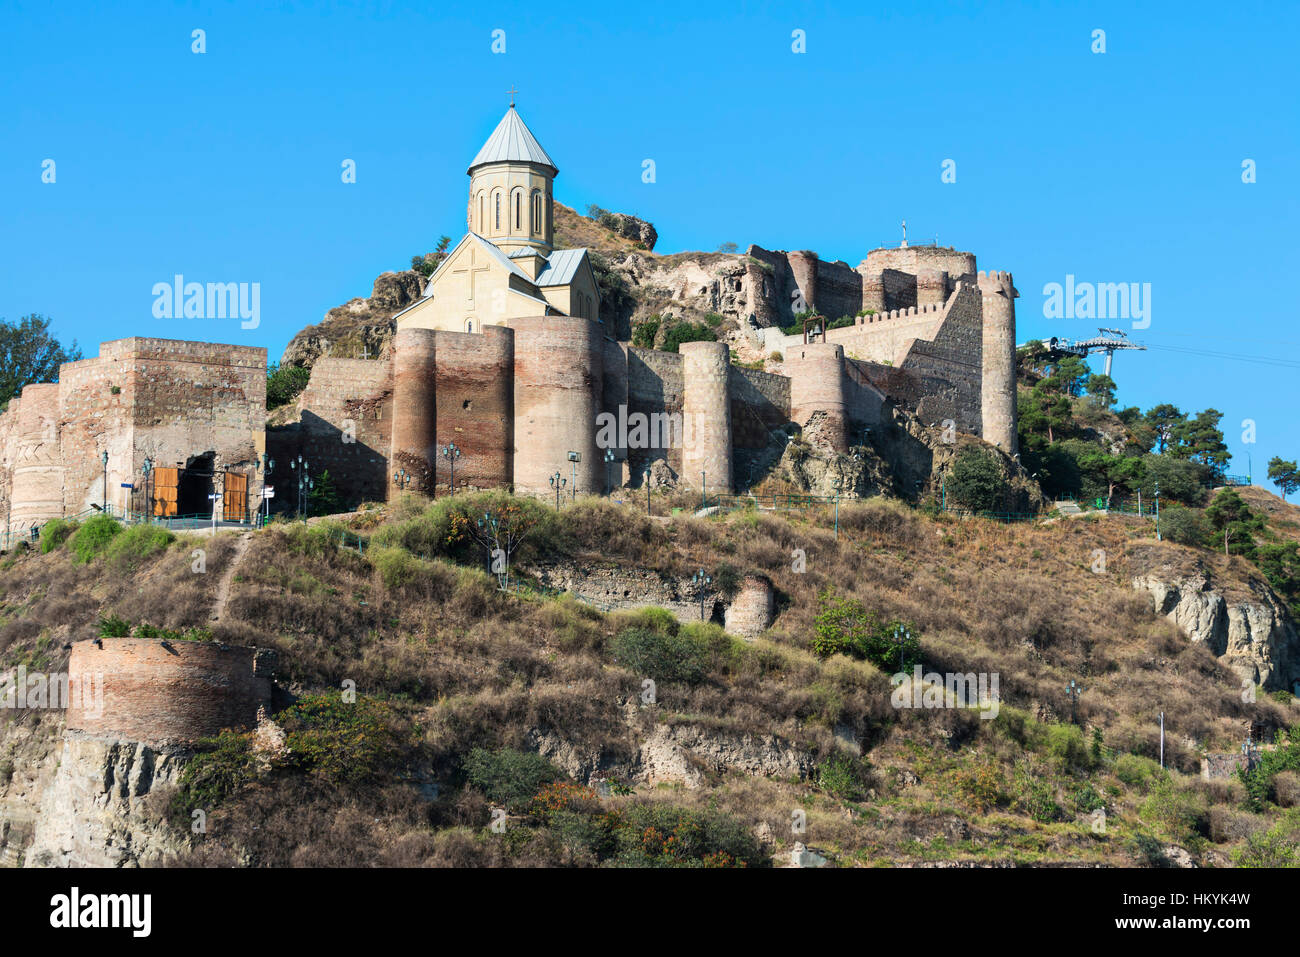 La forteresse de Narikala et saint Nicholas church, Tbilissi, Géorgie, Caucase, Moyen-Orient, Asie Banque D'Images